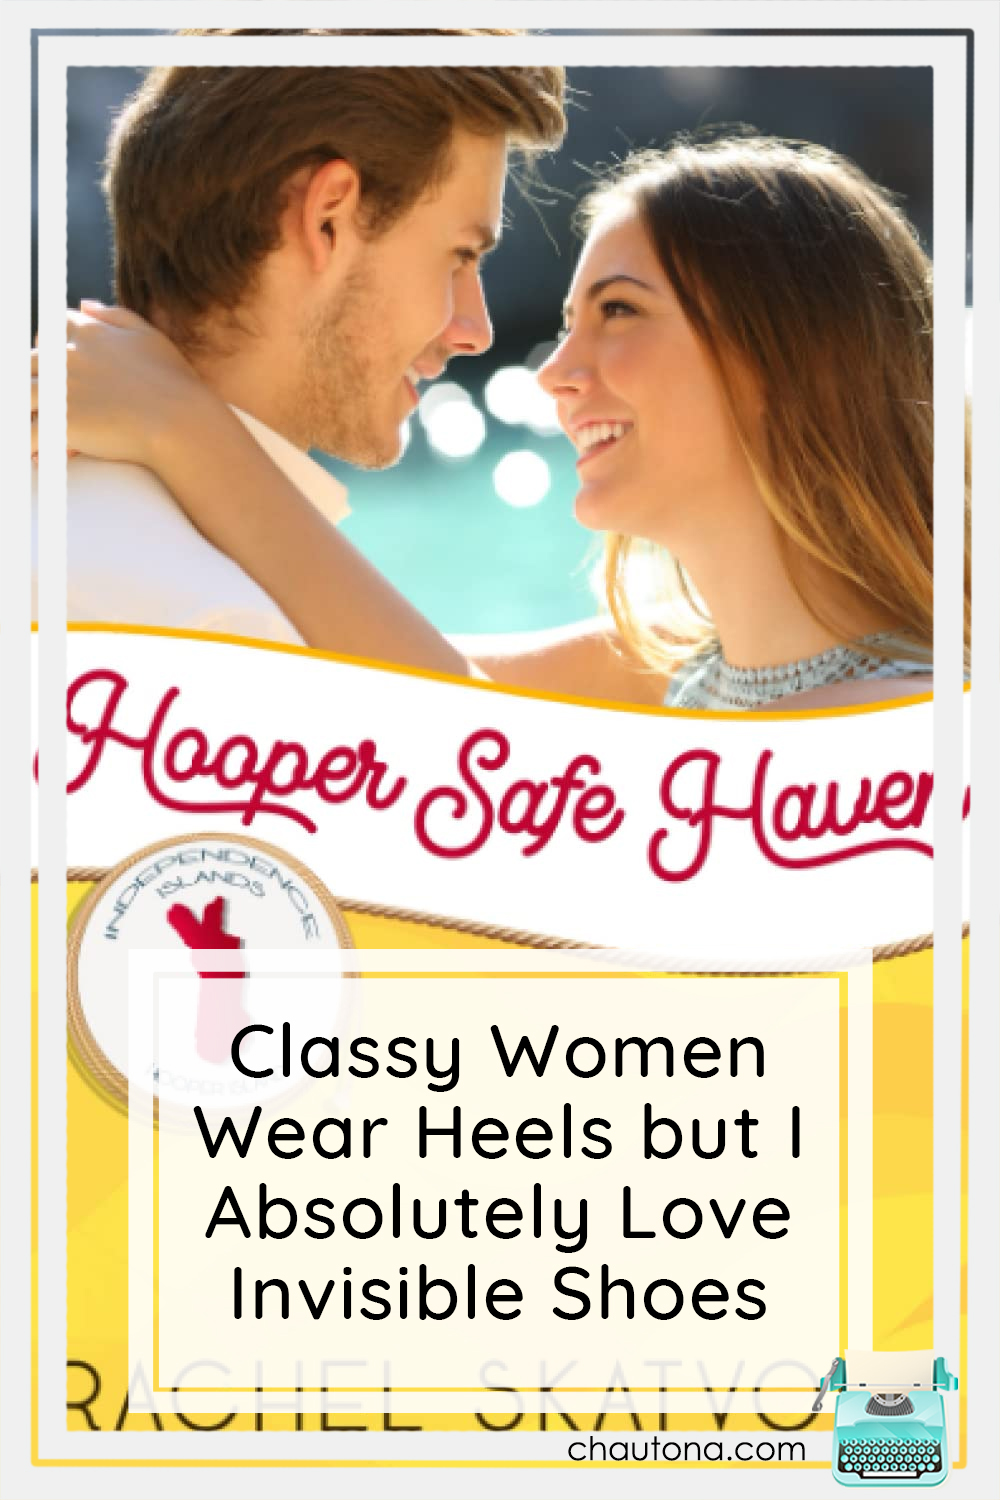 Hooper Safe Haven